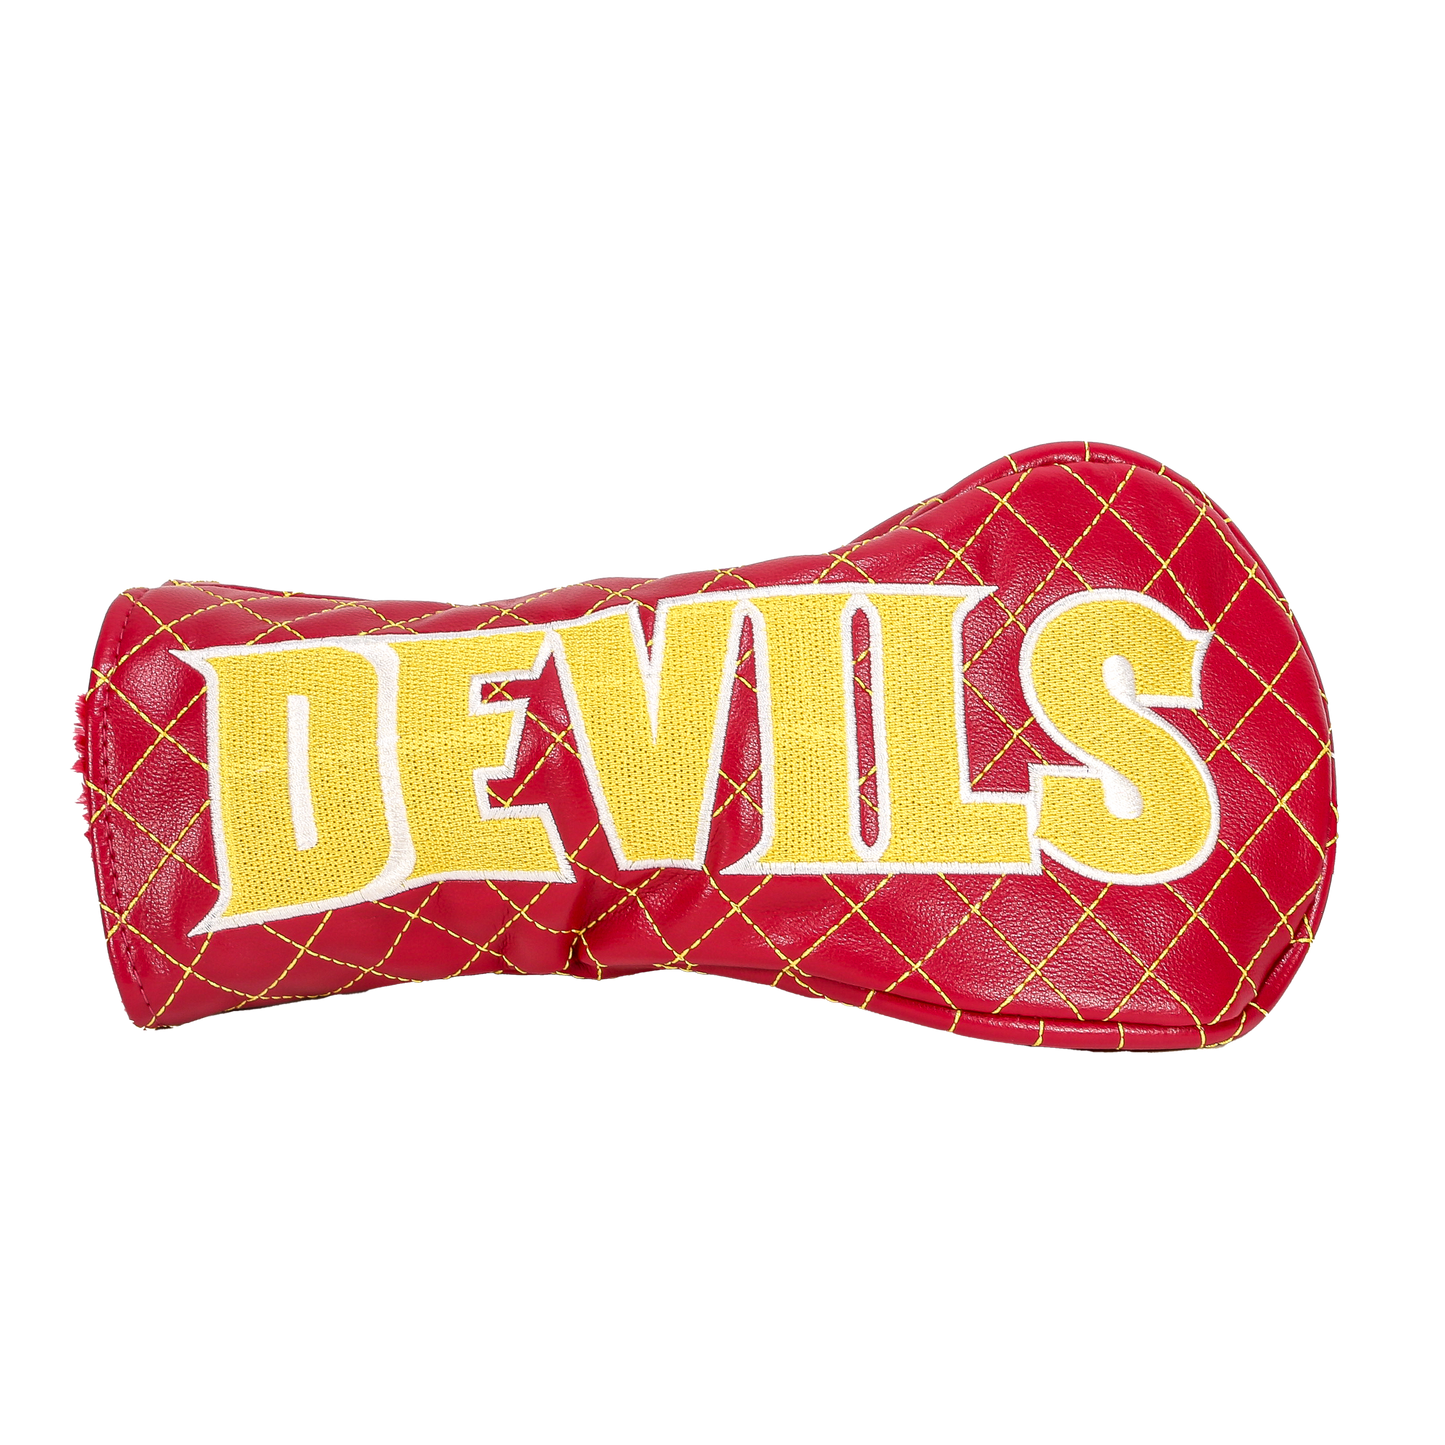 ASU "Devils" Fairway Cover